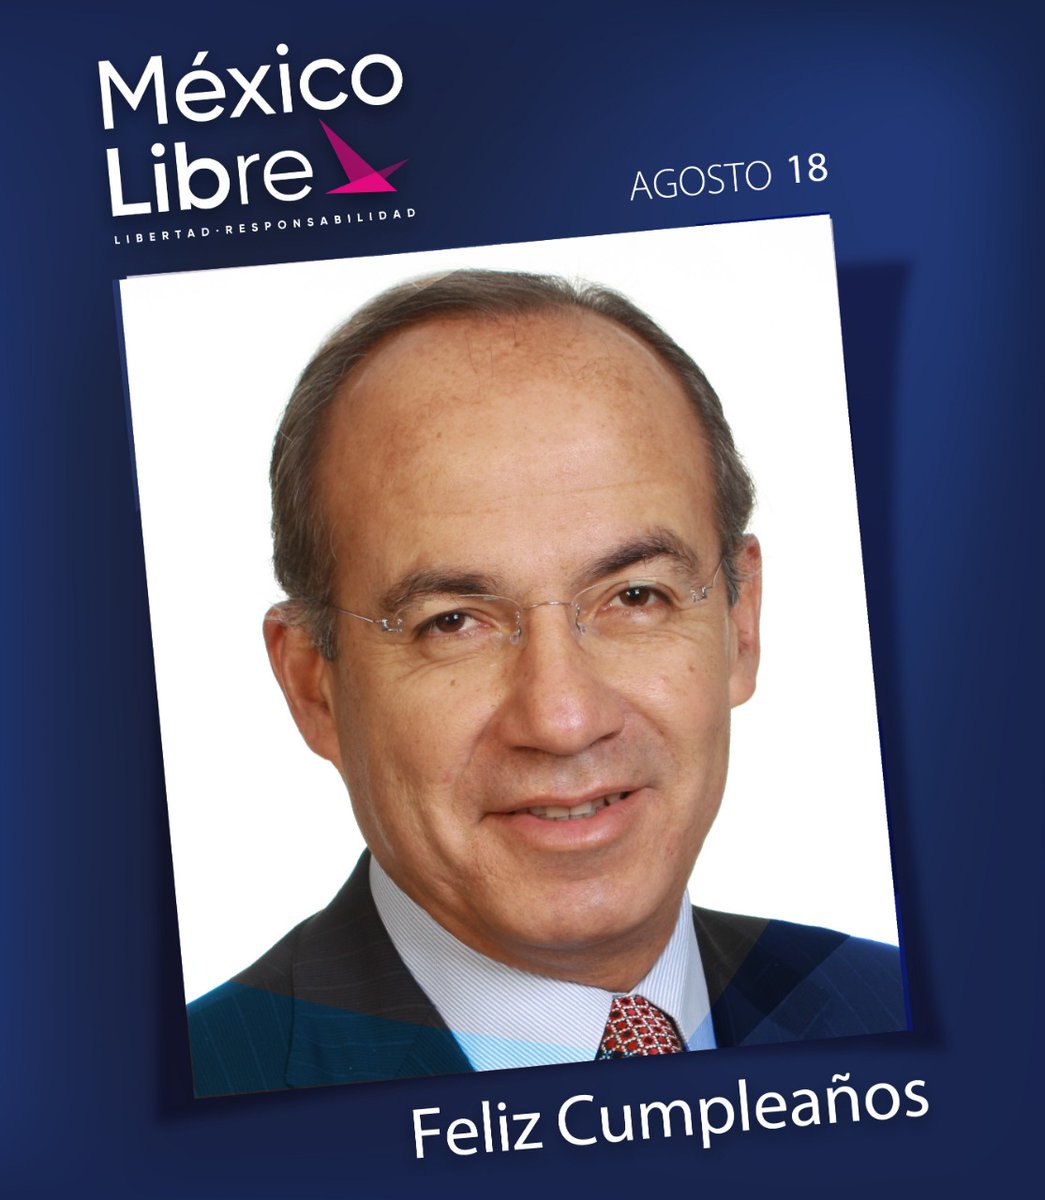 Los mejores deseos, Presidente @FelipeCalderon. Gracias por su liderazgo, valentía y amor a México #FelizCumpleañosFCH